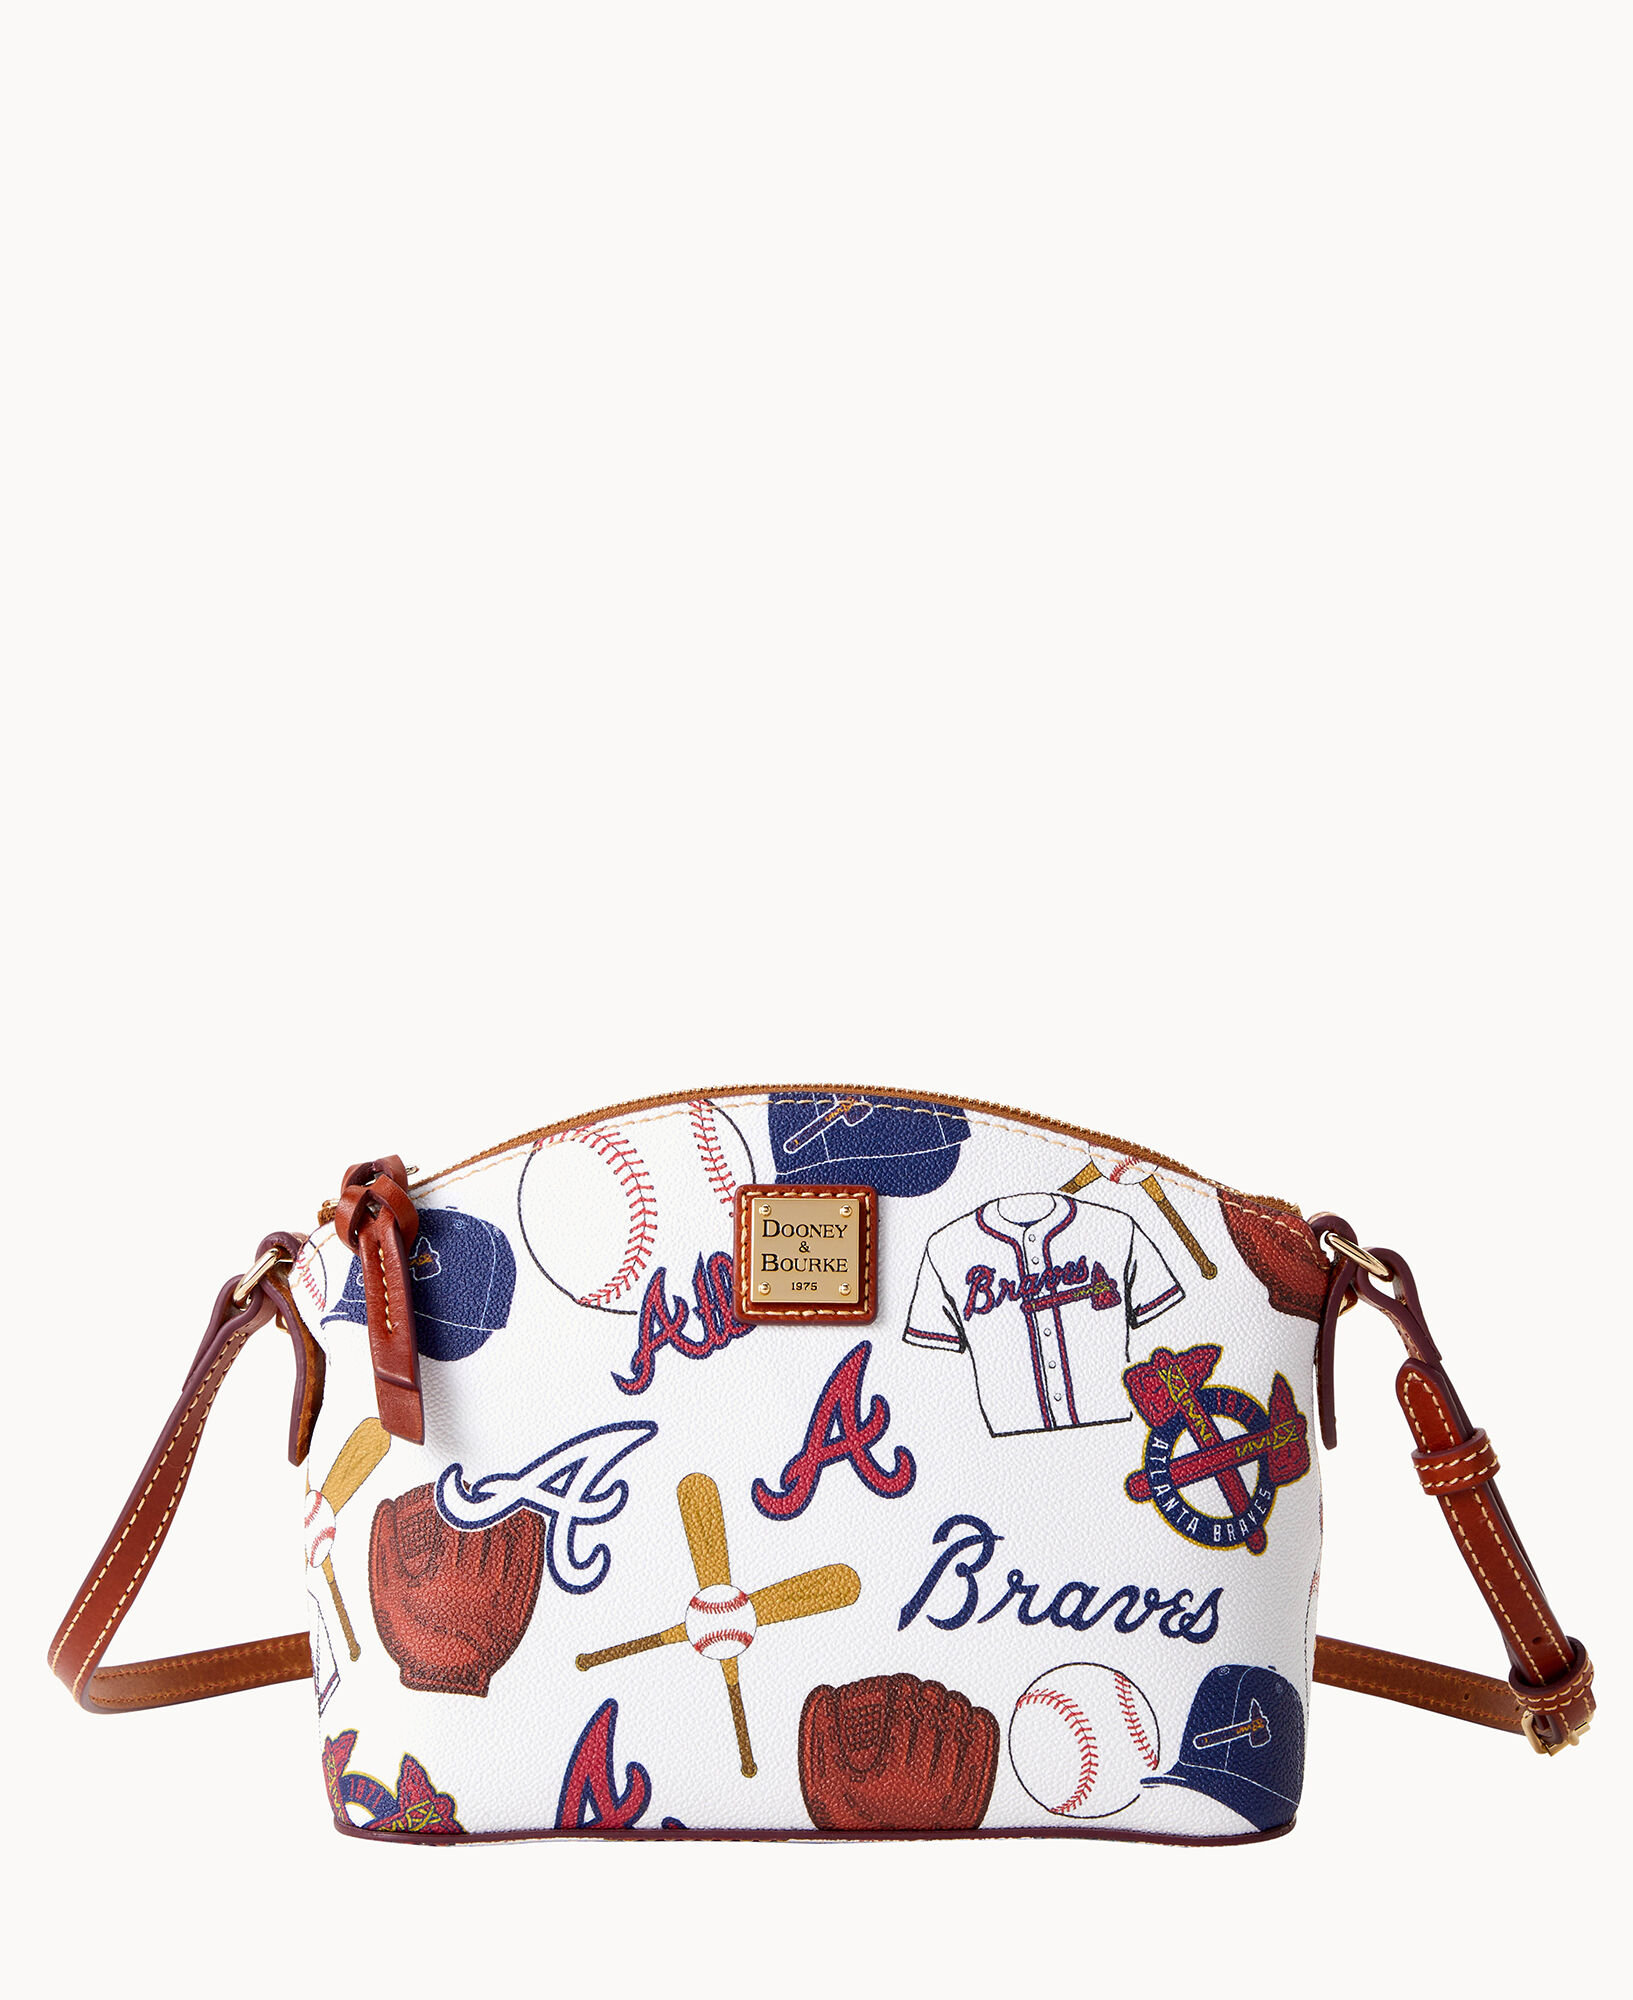 Dooney & Bourke Atlanta Braves Large Sac Shoulder Bag